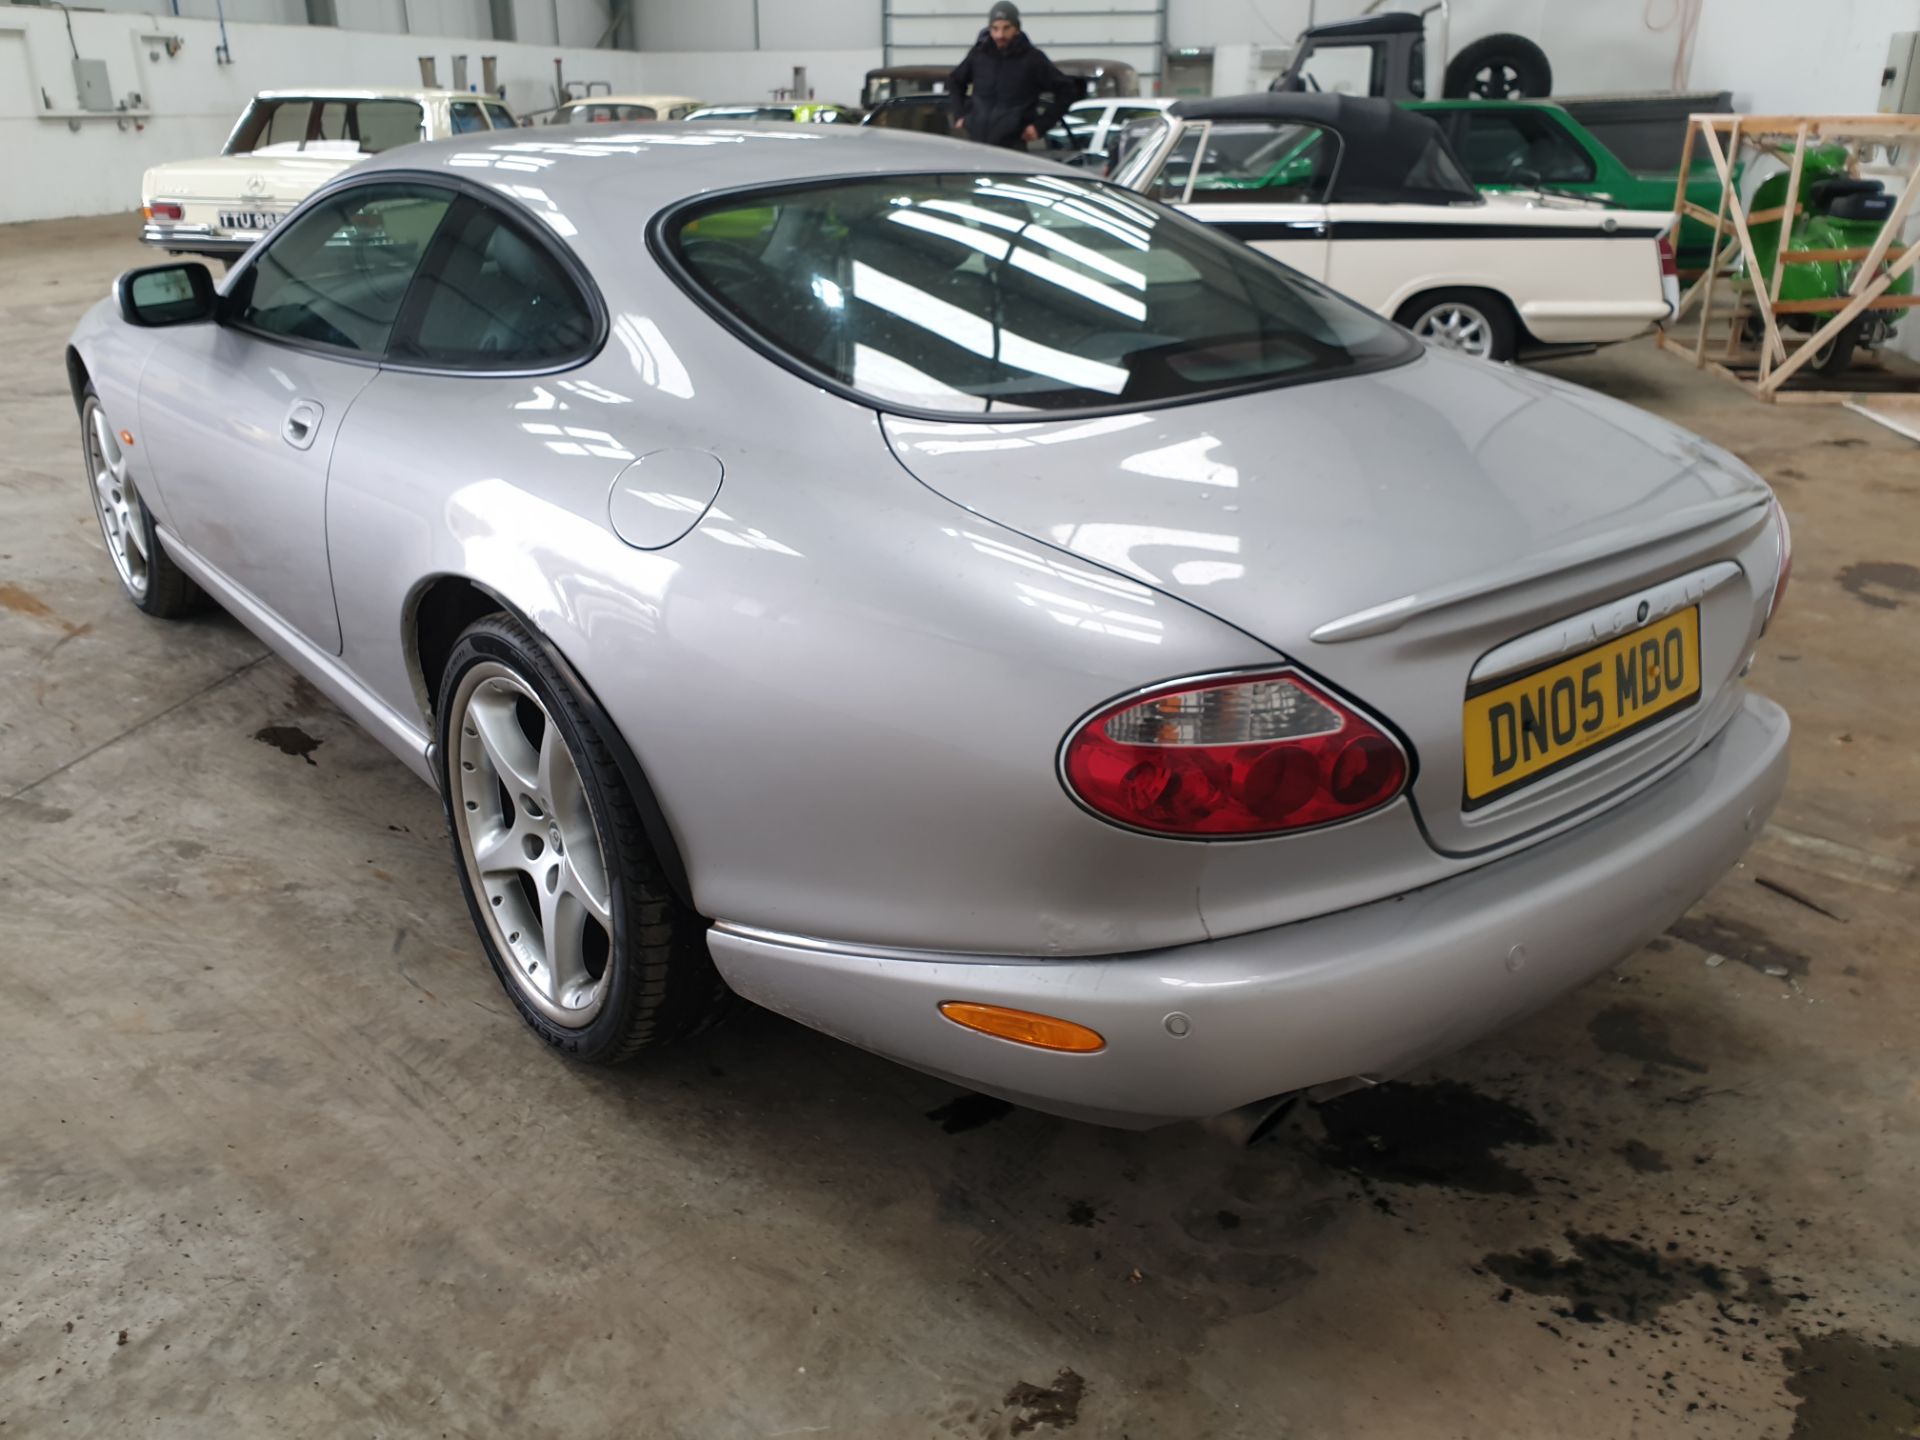 2005 Jaguar XK8 Coupe - Image 5 of 12